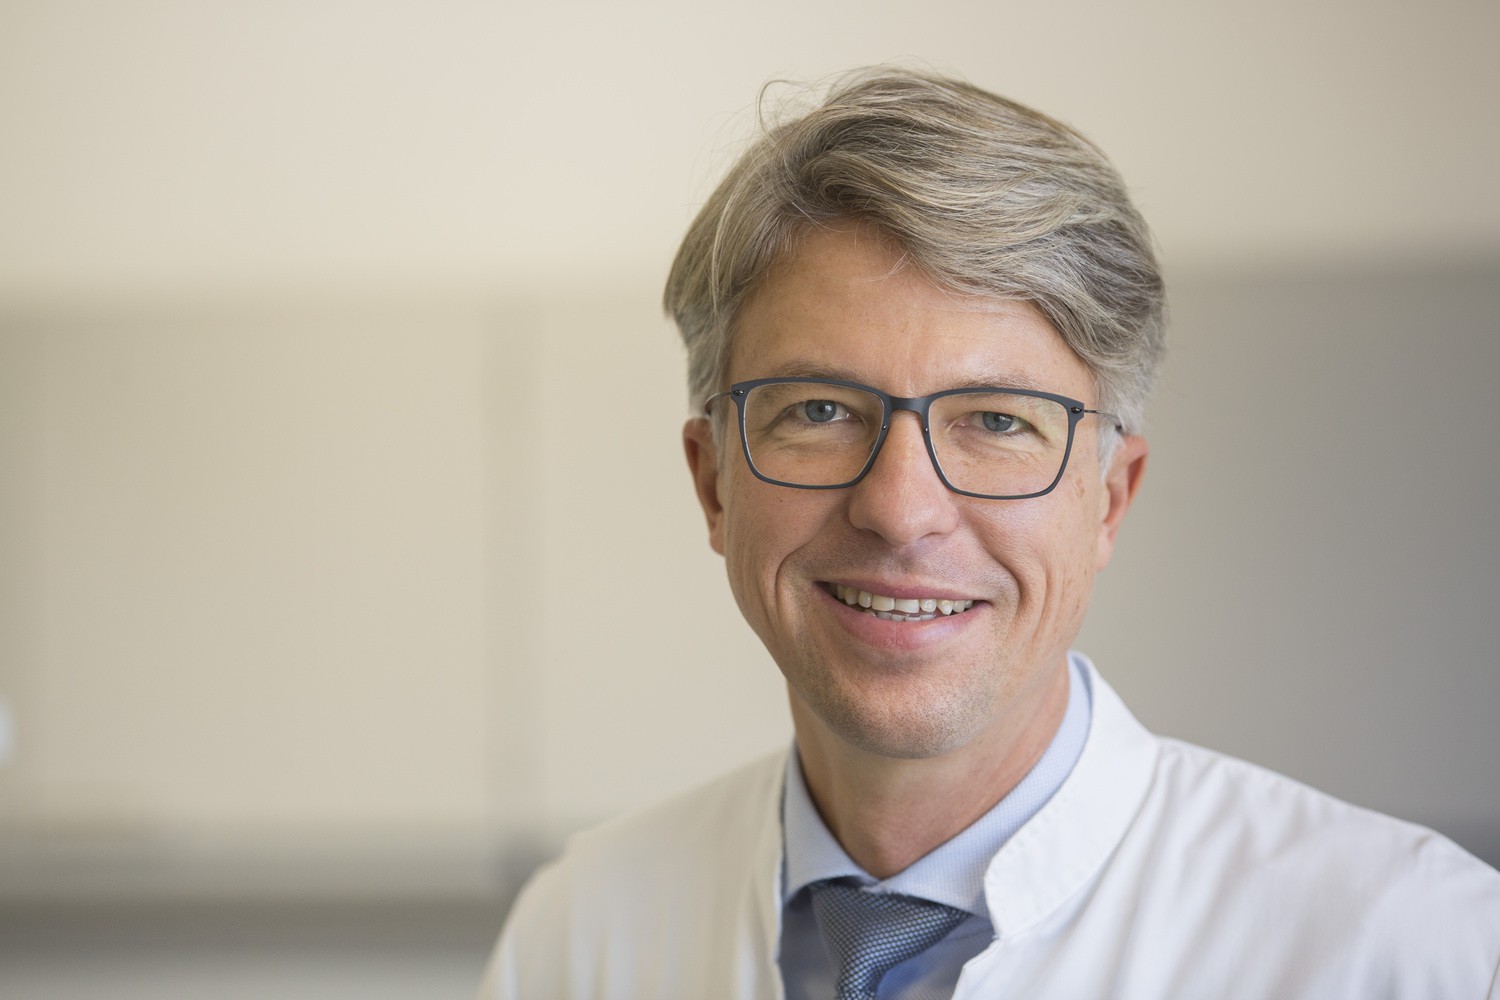 UKL-Hämatologe Prof. Uwe Platzbecker ist deutscher Teilprojektleiter im internationalen „EURO-MDS“-Konsortium. Die beteiligten Ärzte und Wissenschaftler forschen zum komplexen Prozess der Entstehung der Knochenmarkserkrankung MDS.